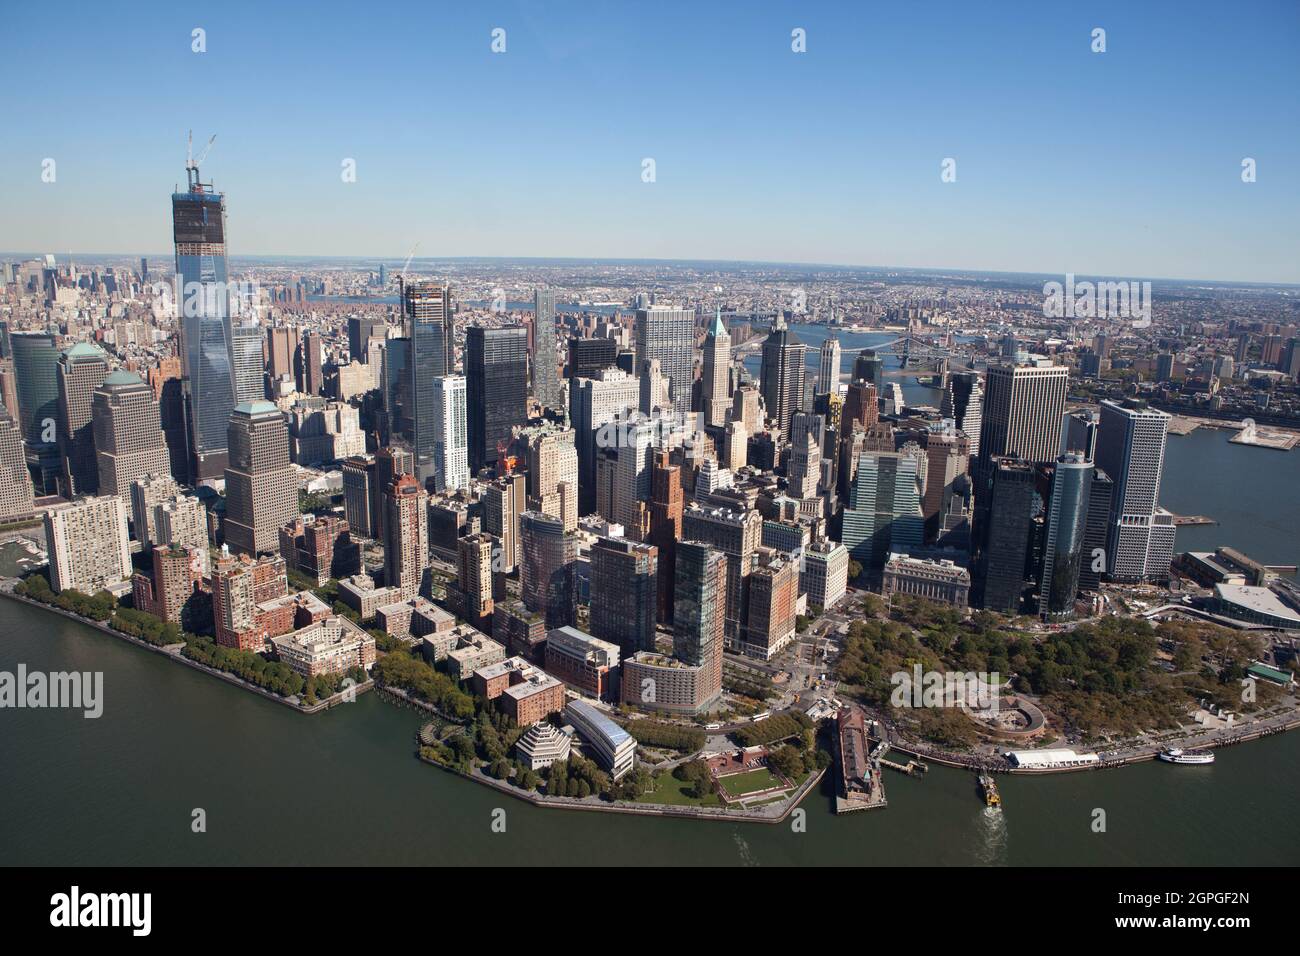 Vue en hélicoptère sur Manhattan Island, New York, États-Unis Banque D'Images